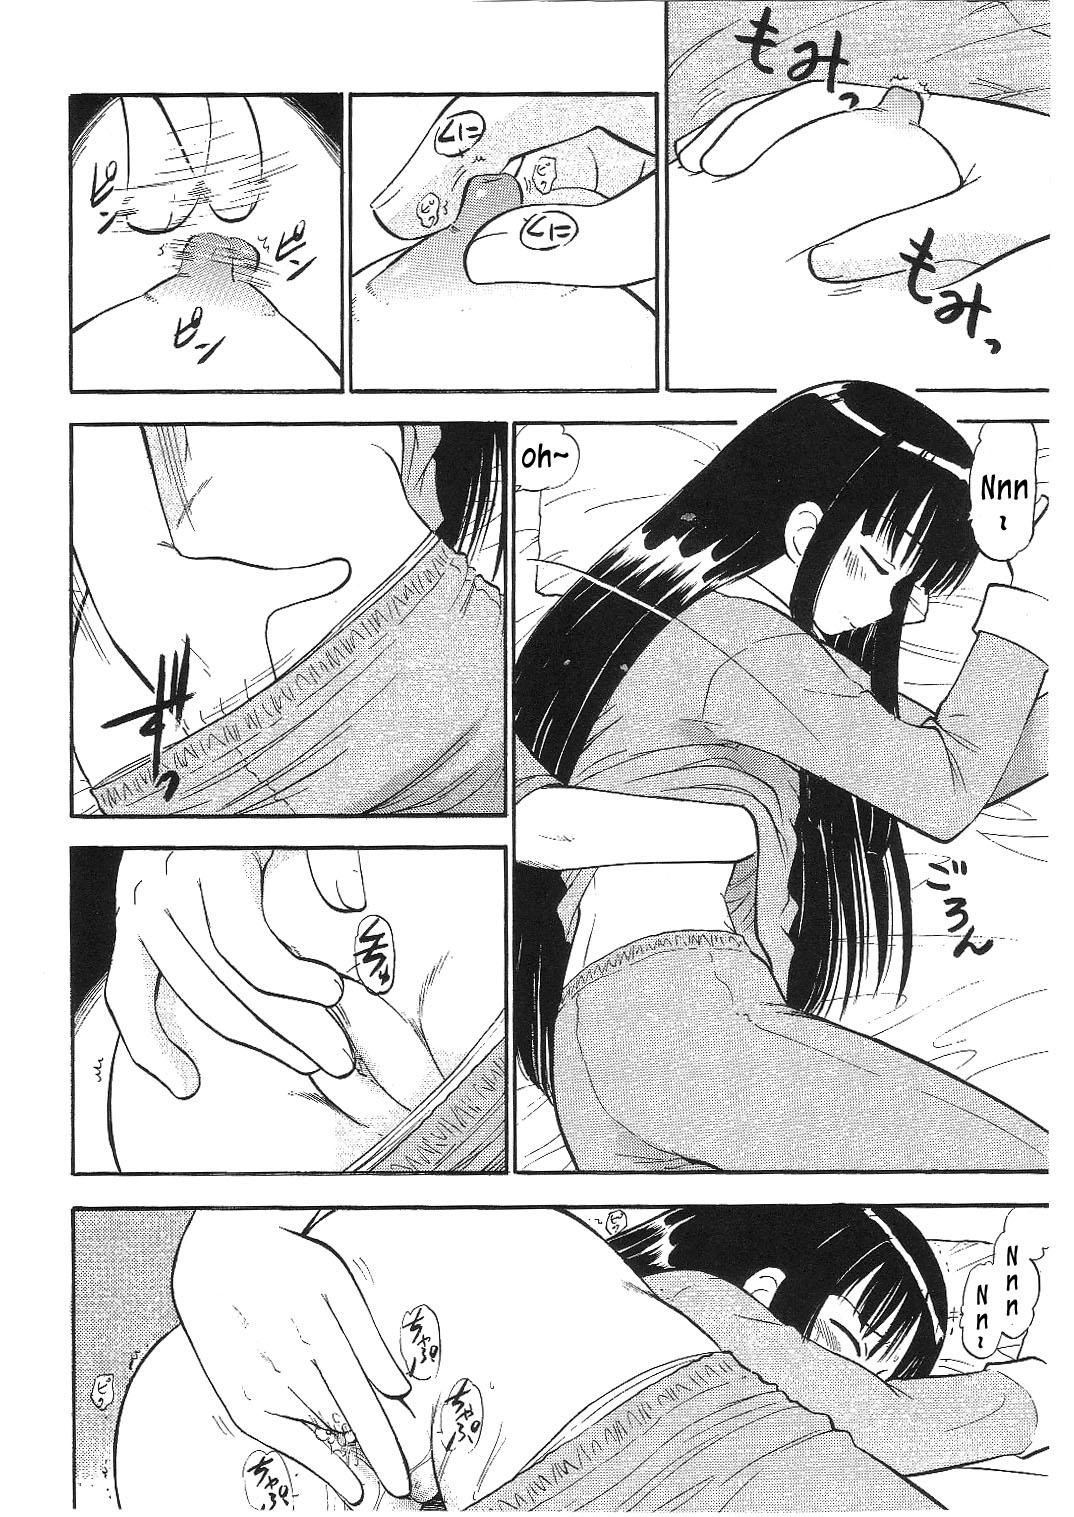 Milf Porn Konoka no Koisuru Heart | Konoka's Loving Heart - Mahou sensei negima Yanks Featured - Page 5